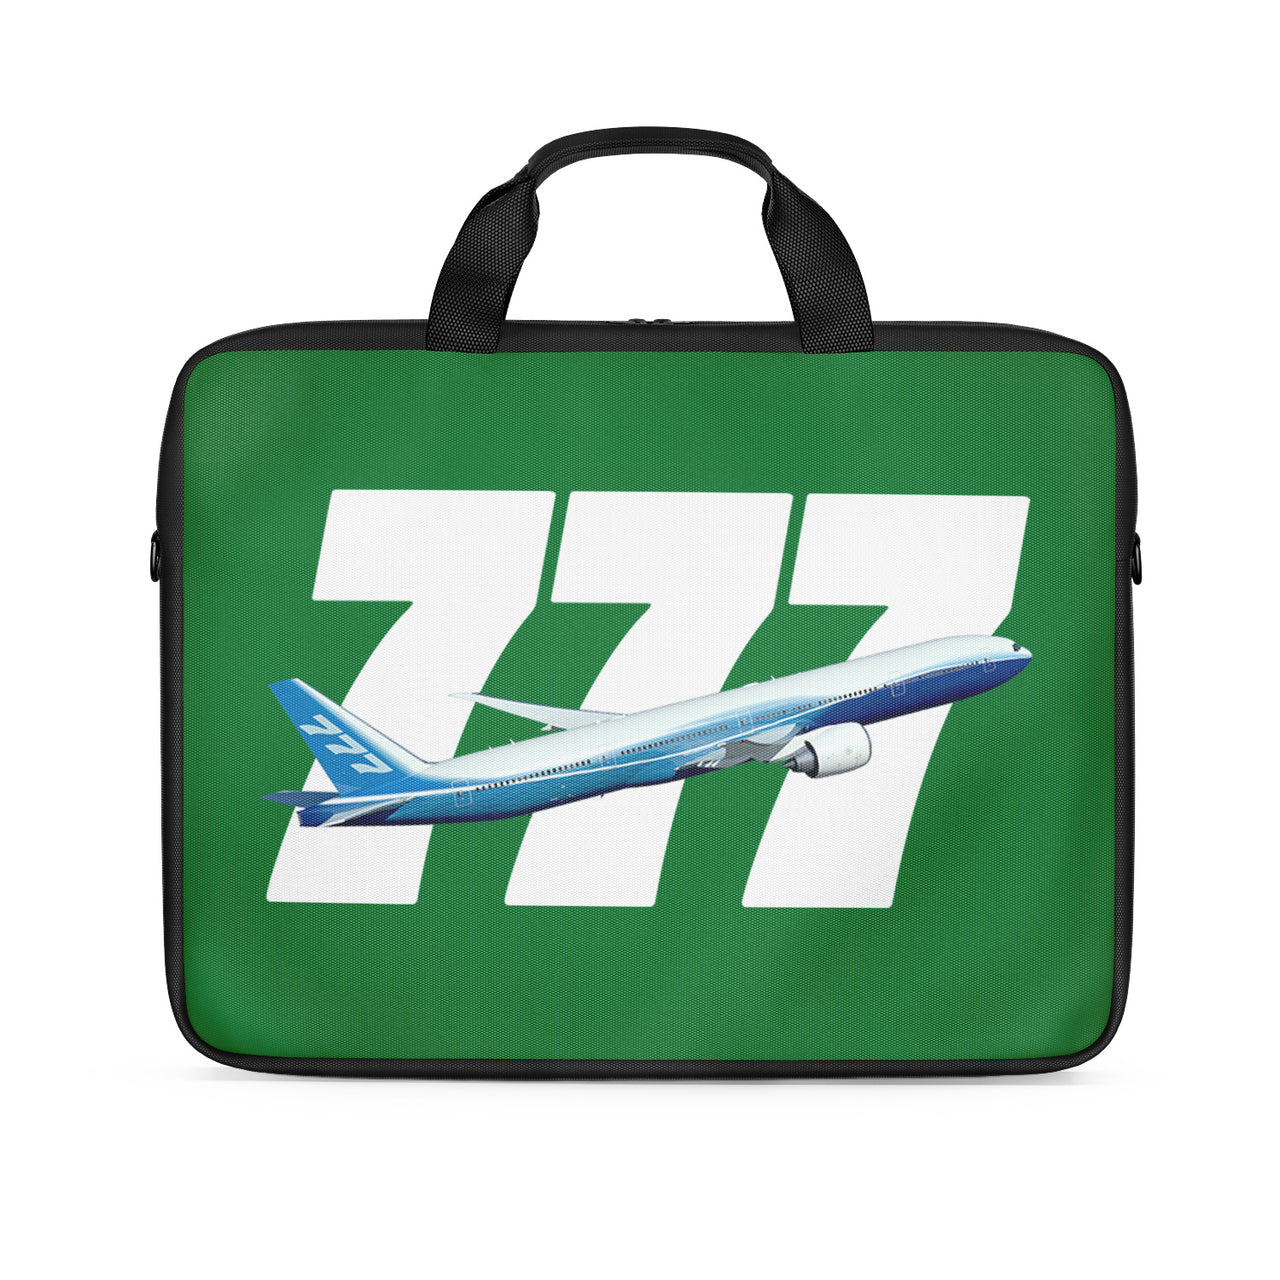 Super Boeing 777 Designed Laptop & Tablet Bags